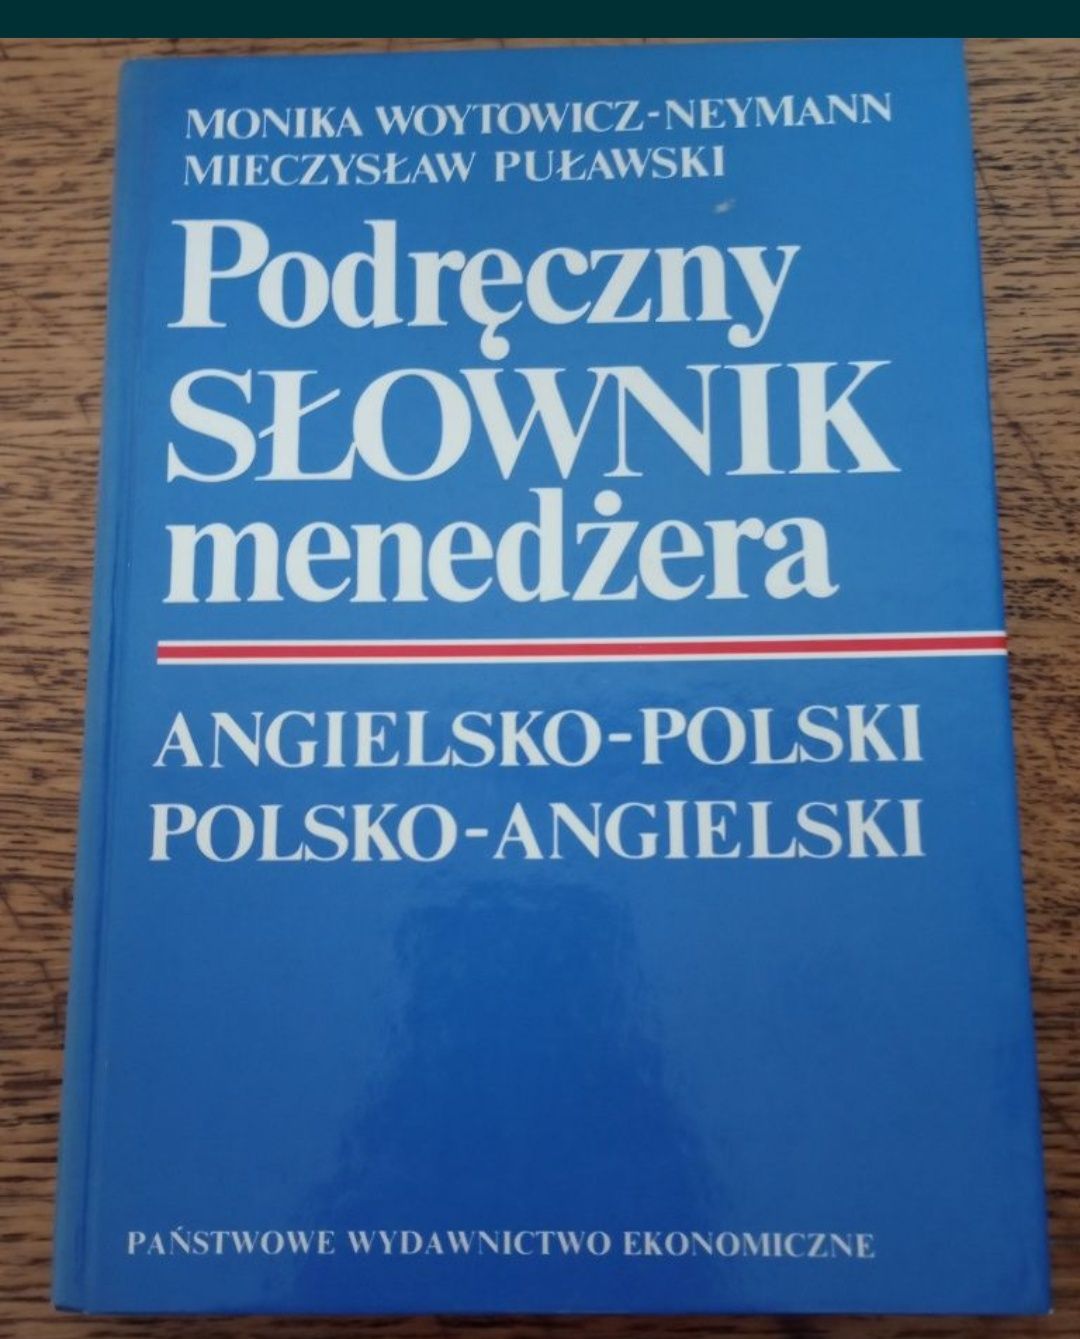 Podręczny słownik menedżera, anglo-polski, polsko-angielski